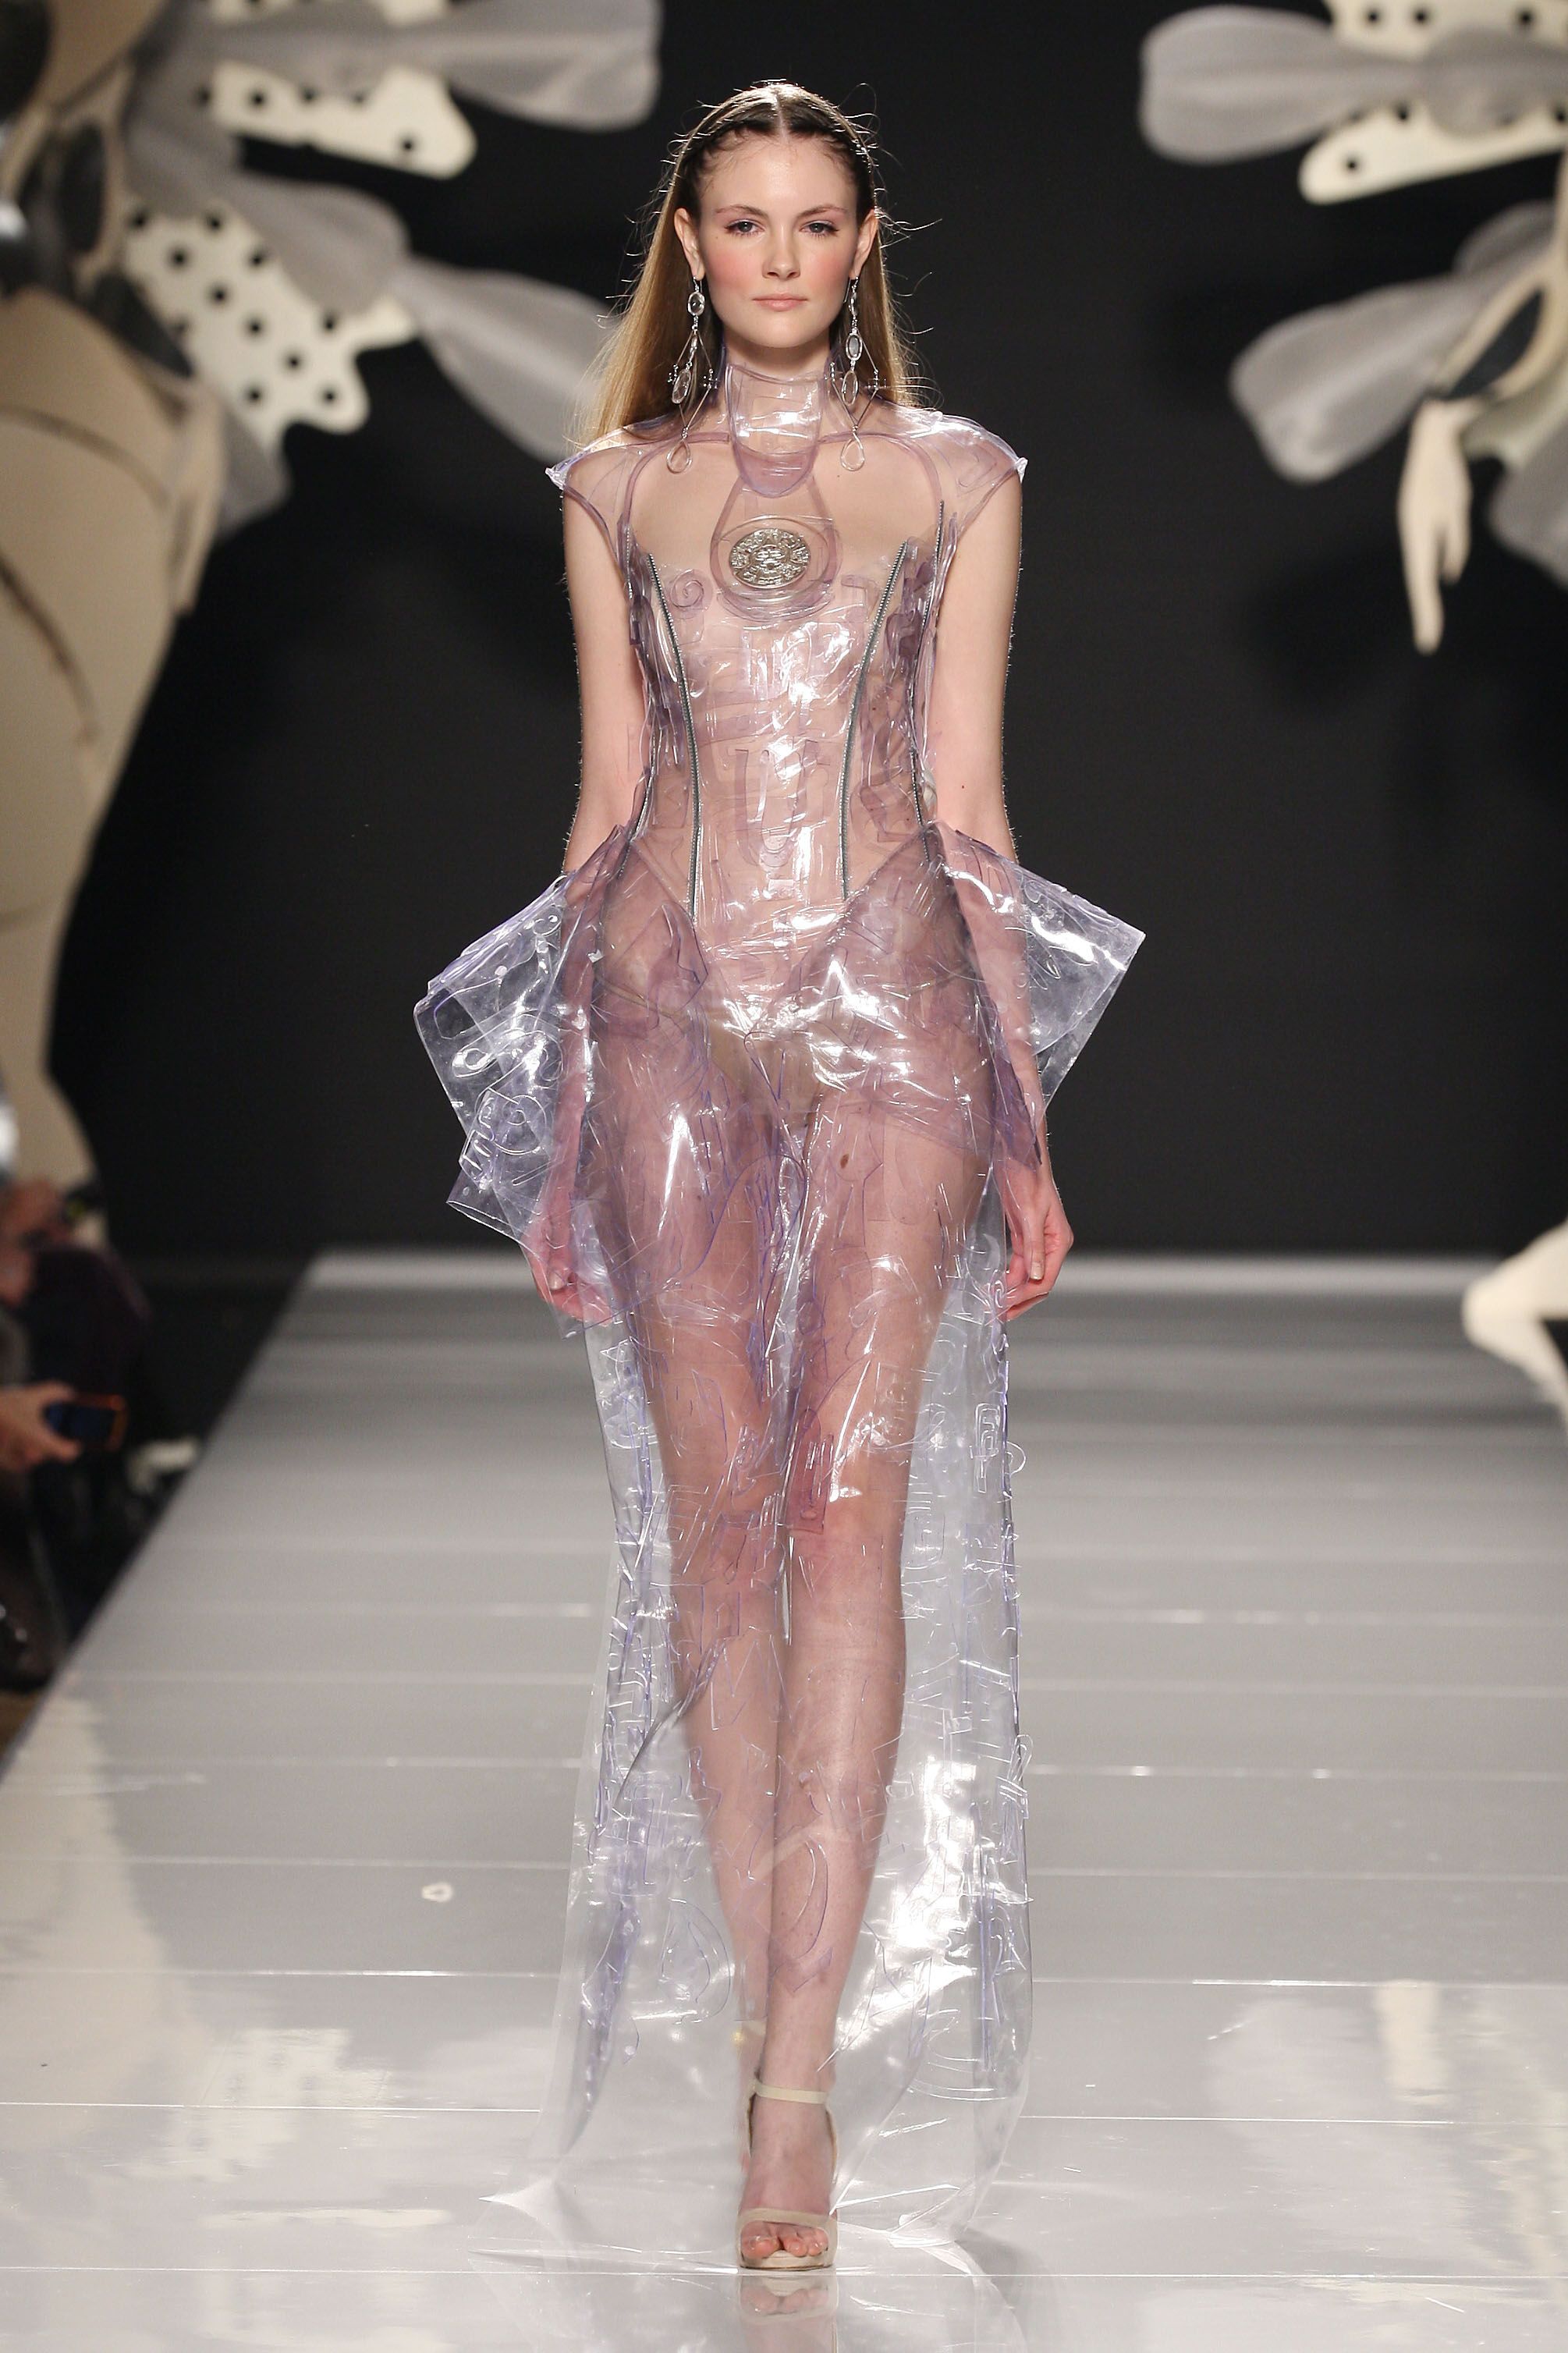 Tranh cãi quanh chiếc váy bằng nhựa của sao Hàn - 7